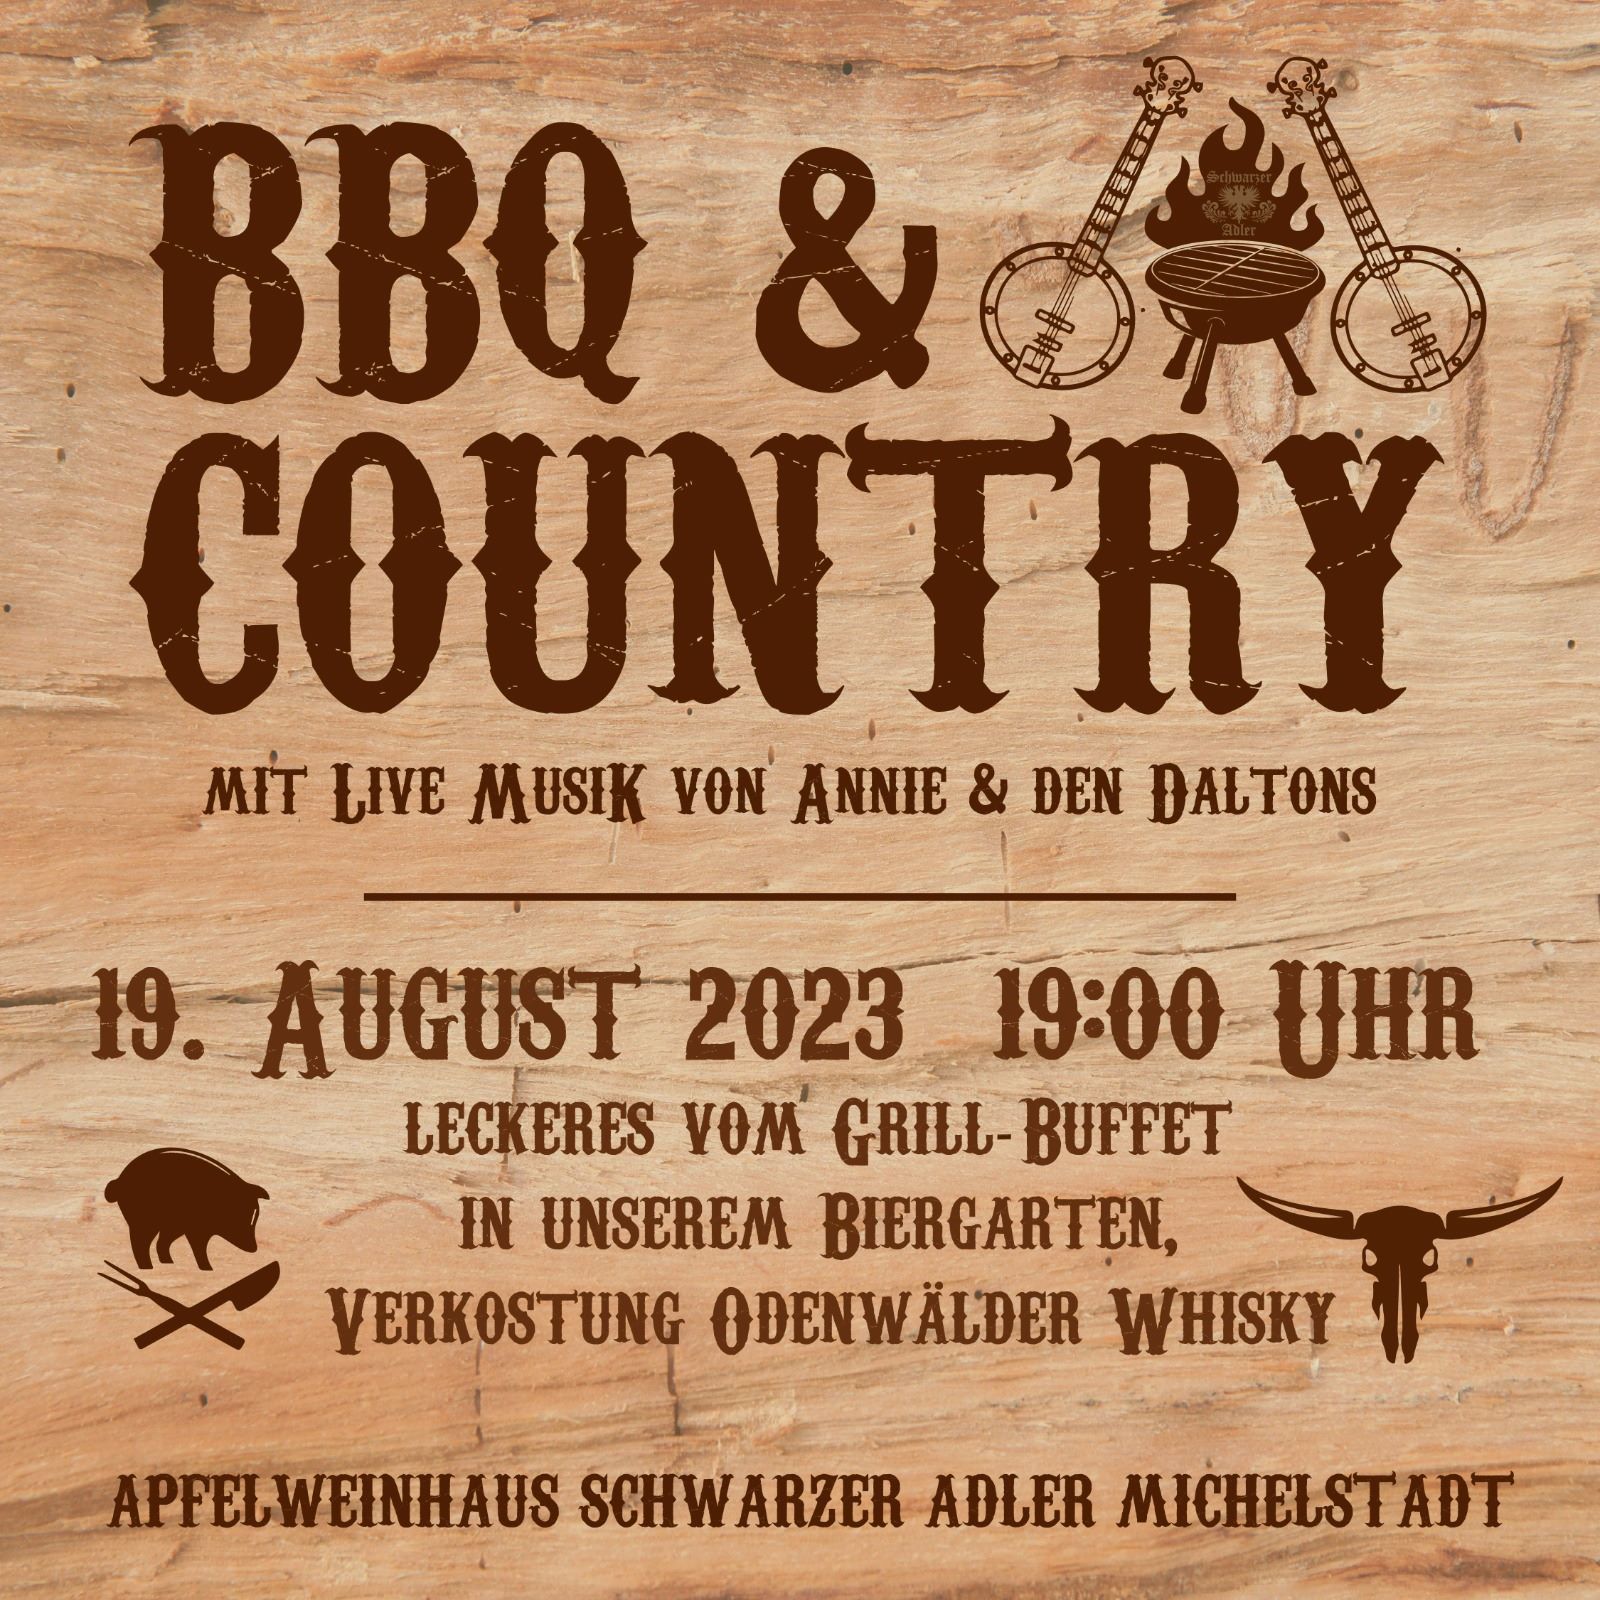 Veranstaltung - BBQ & Country - Apfelweinhaus Schwarzer Adler